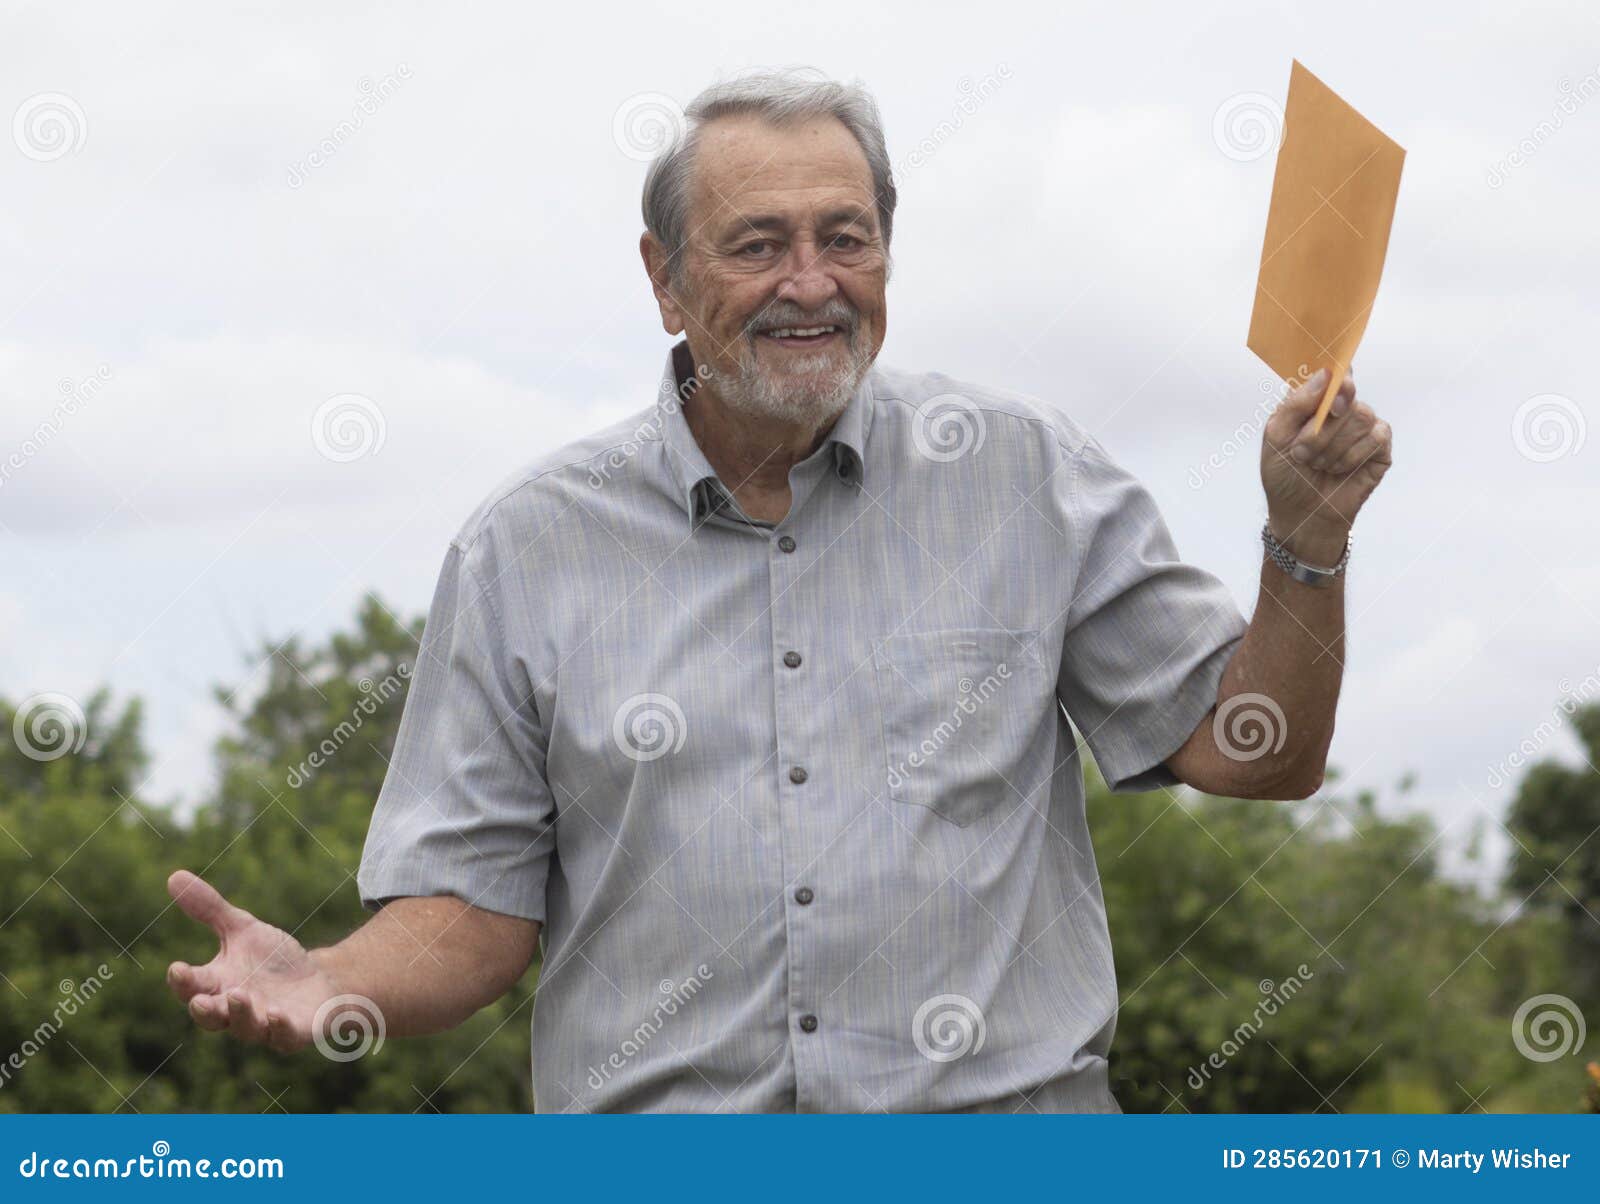 senior man smiling holding manilla envelope